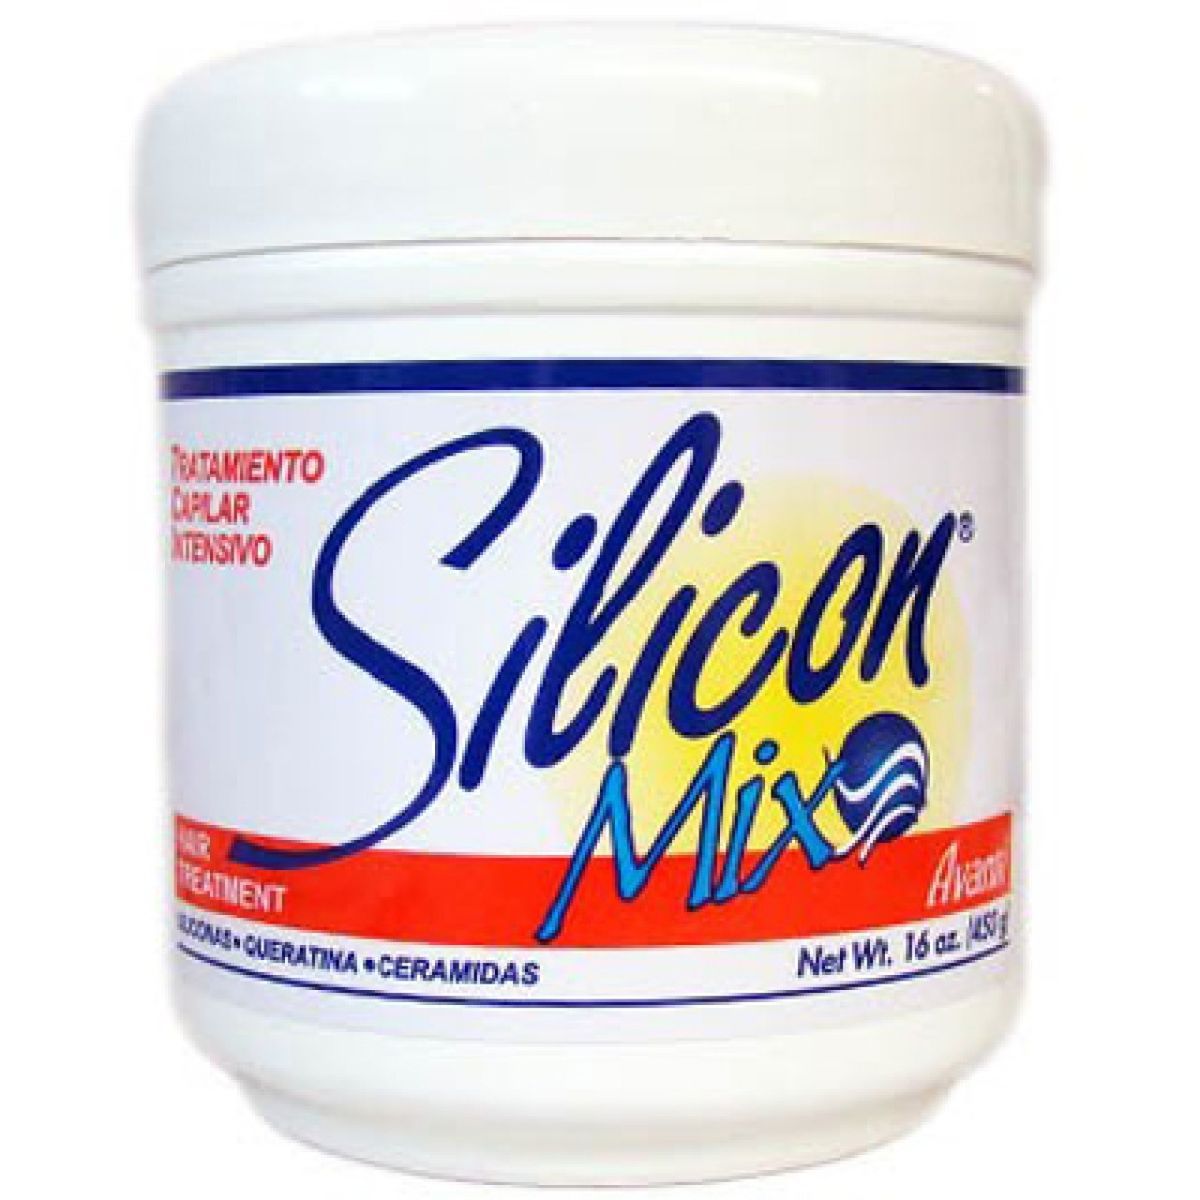 Silicon Mix Avanti Capilar Hair Treatment 16 Ounce